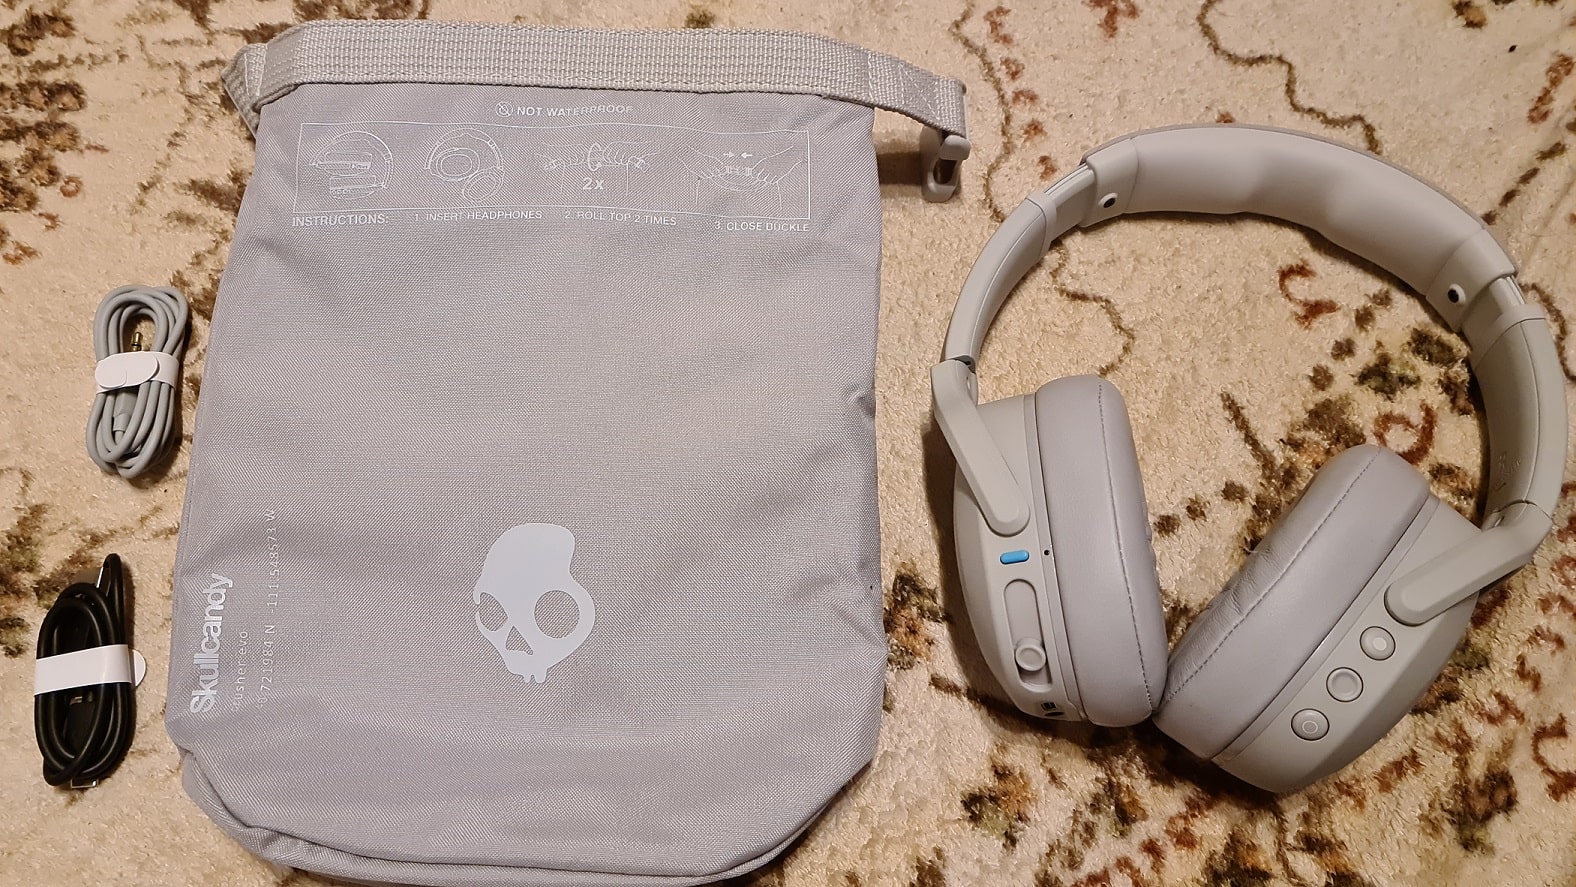 Zu sehen ist der Inhalt der Crusher Evo – neben den Kopfhörern liegt eine wattierte Tragetasche bei, sowie ein USB-C-Ladekabel und ein AUX-Kabel. 